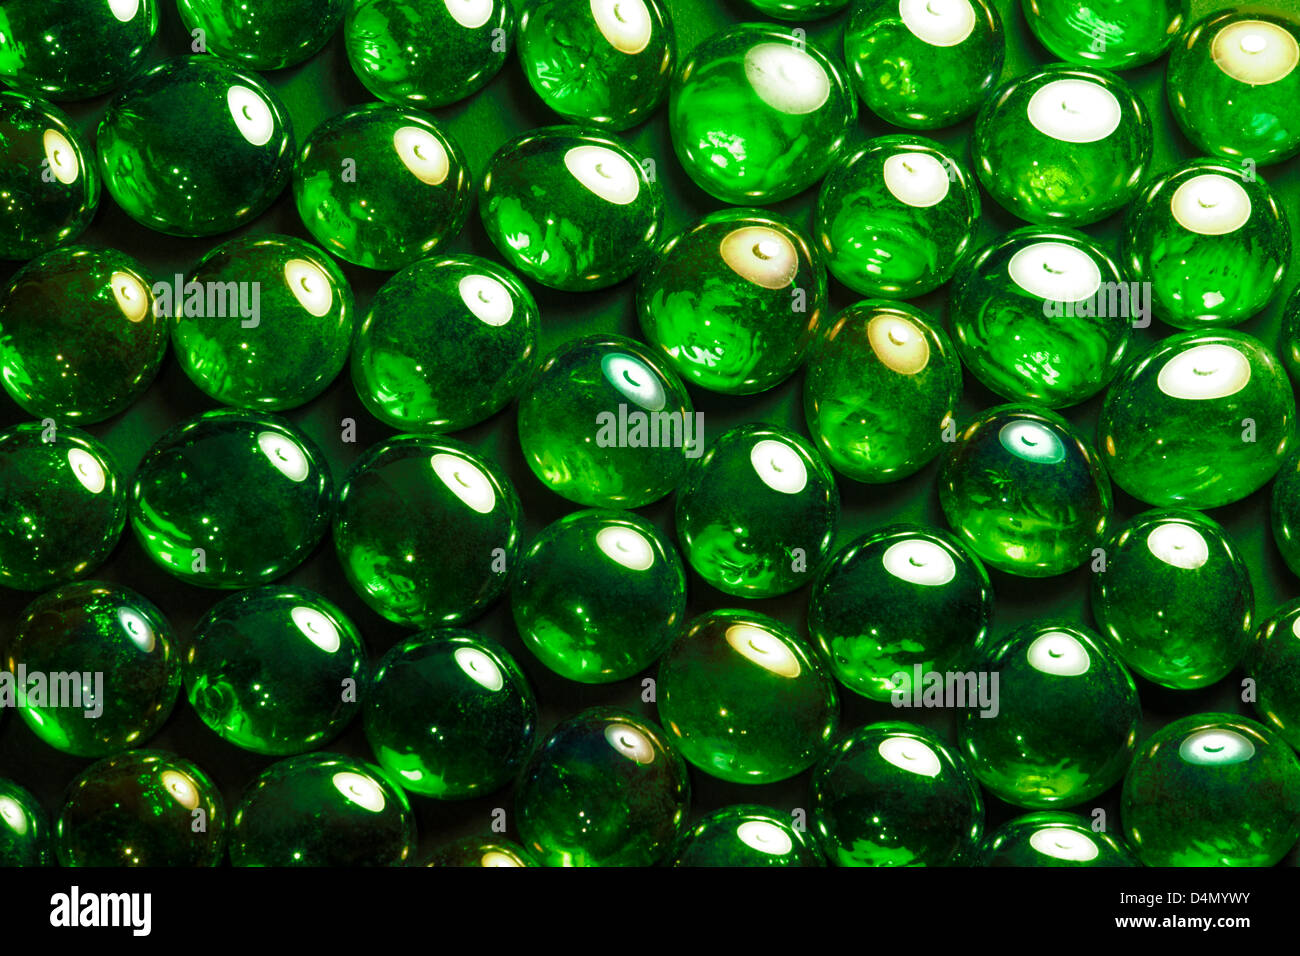 Résumé fond plein cadre photo avec billes en verre vert irisé retour sombre Banque D'Images